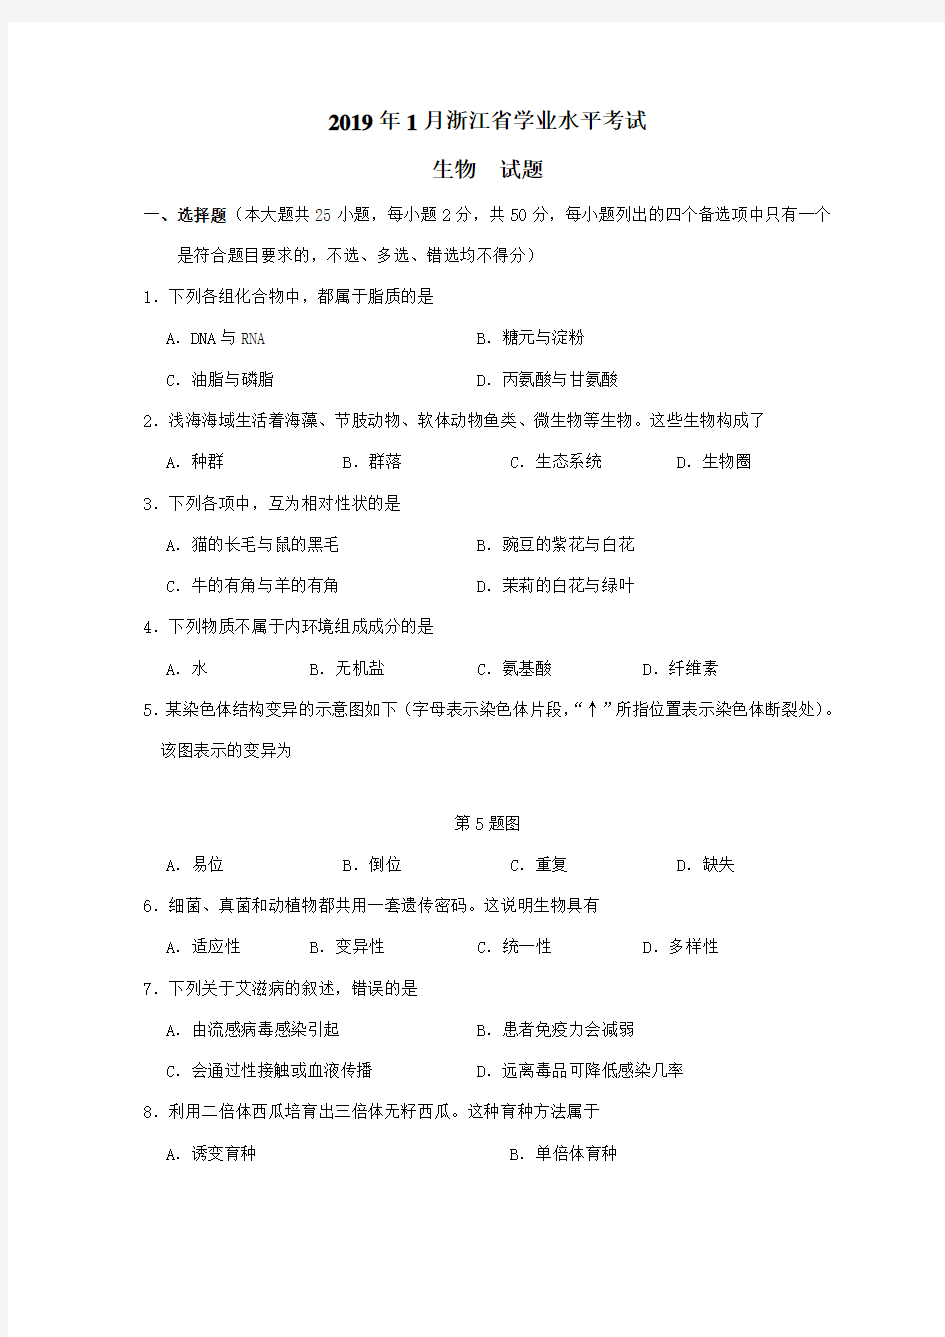 2019年1浙江省学业水平考试 高中生物学考试卷真题卷和答案